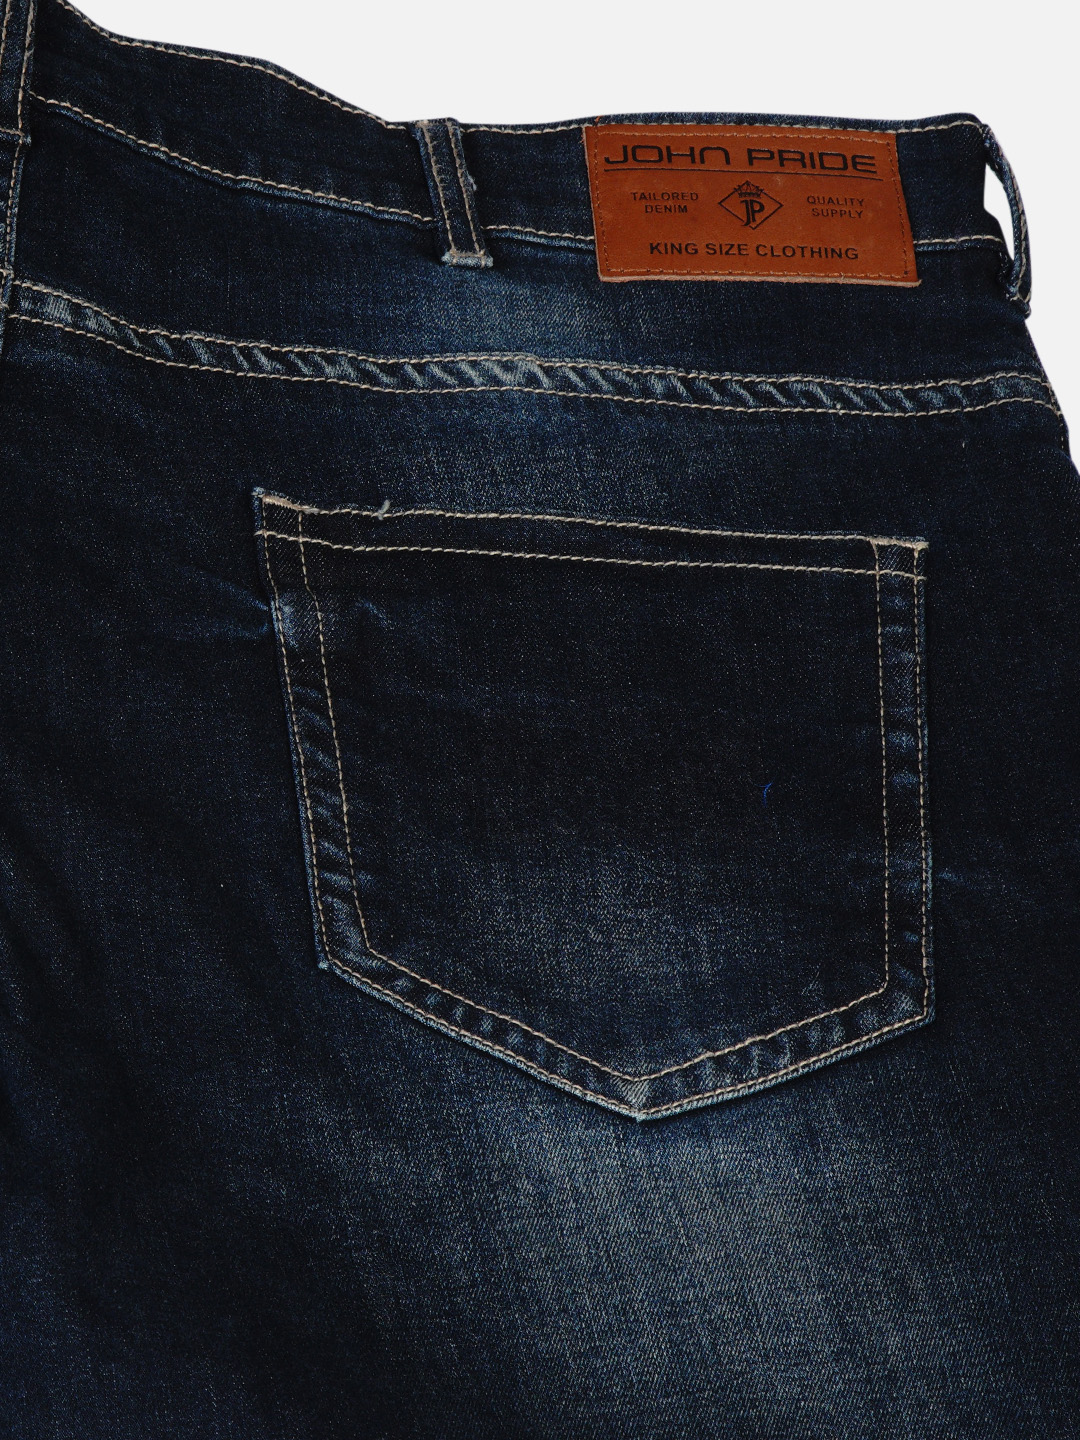 bottomwear/jeans/JPJ12184/jpj12184-2.jpg